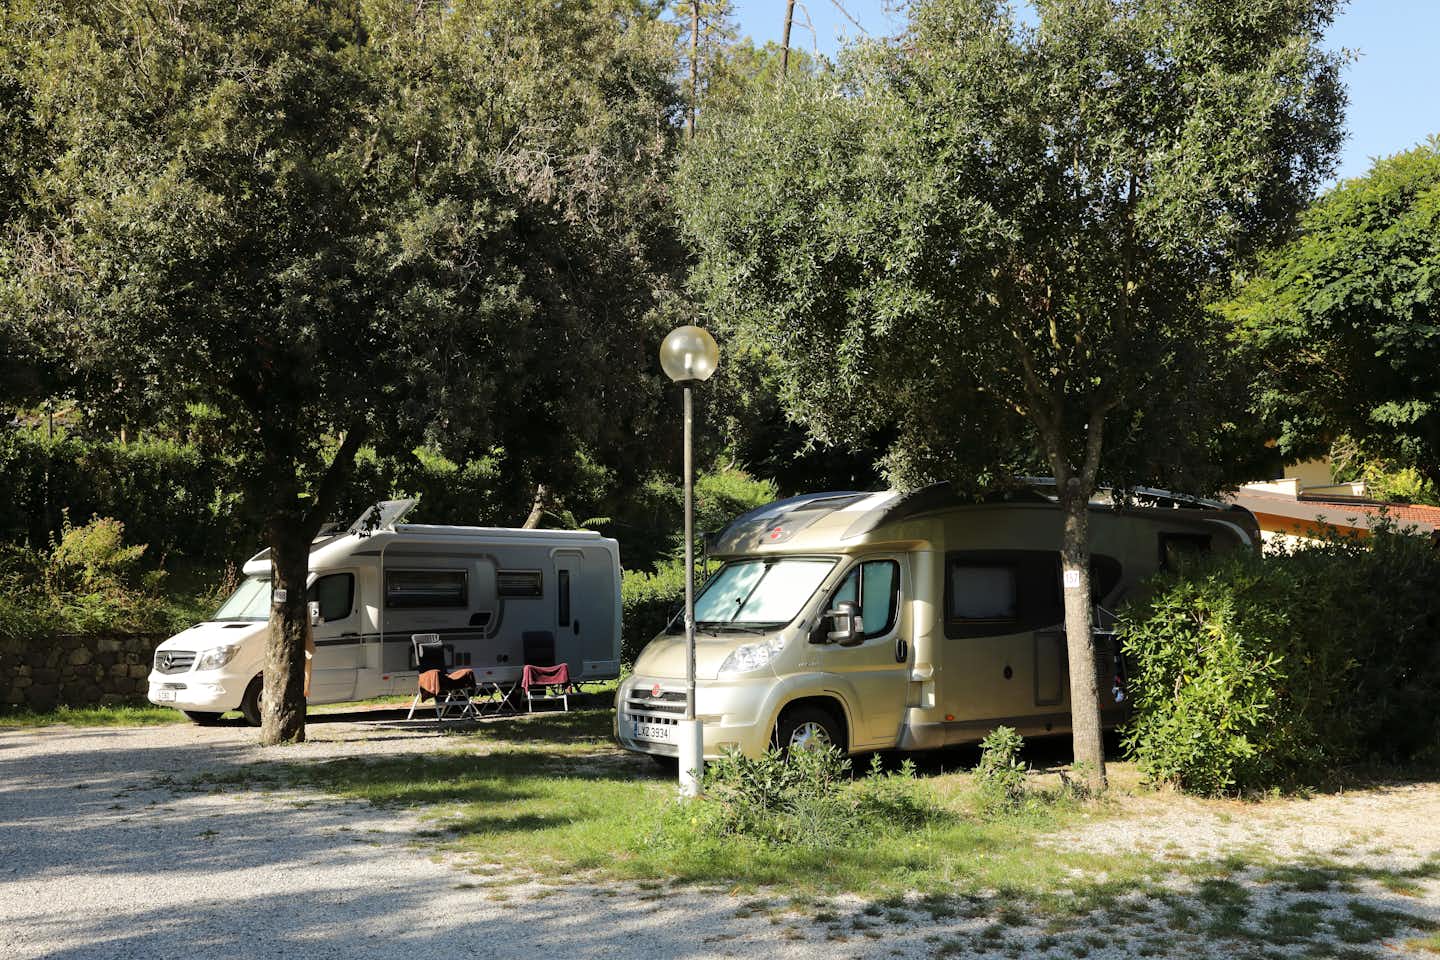 Camping Valdeiva Wohnwagen auf dem Campingplatz unter Bäumen